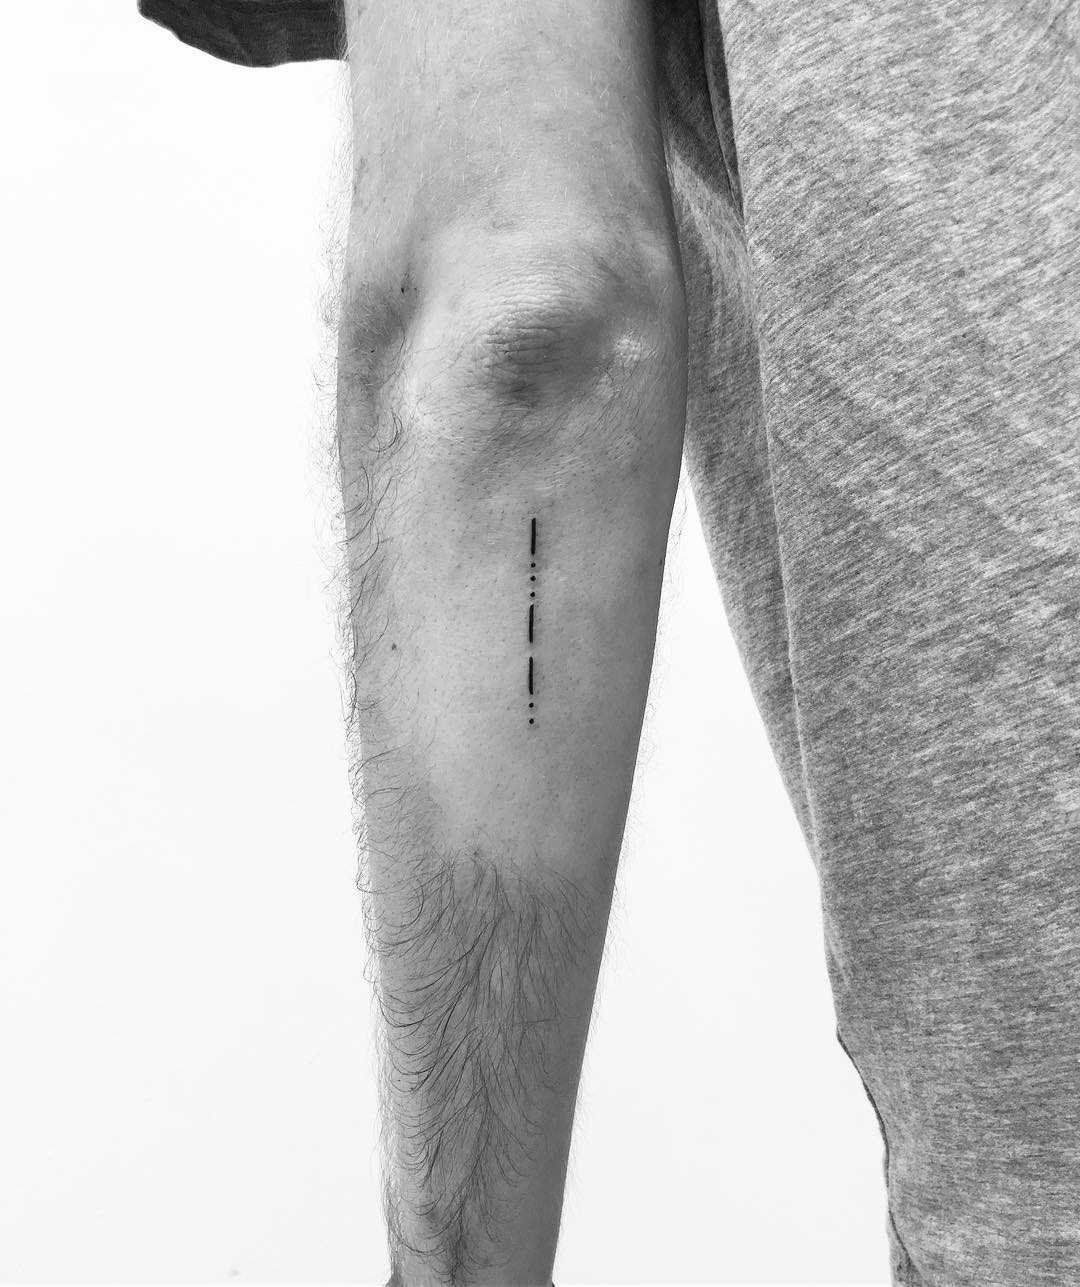 BFF in Morse code tattoo  Couple wrist tattoos Tattoos Minimalist tattoo